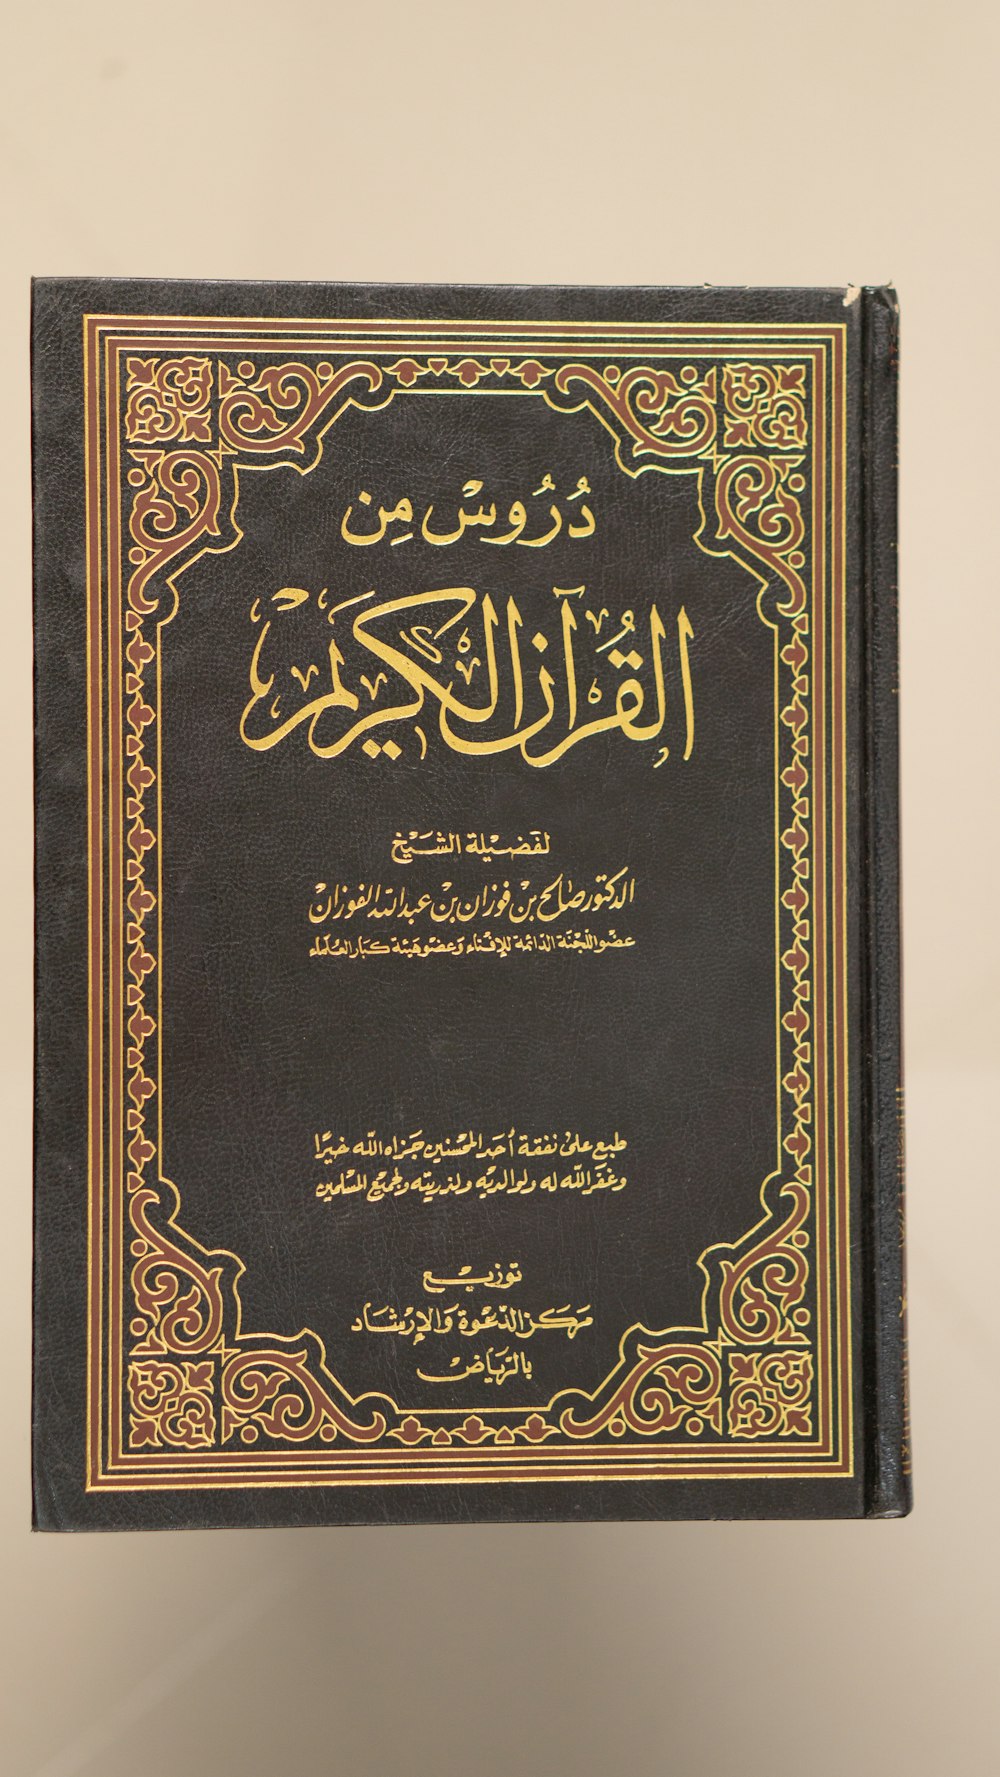 아랍어로 쓰여진 책